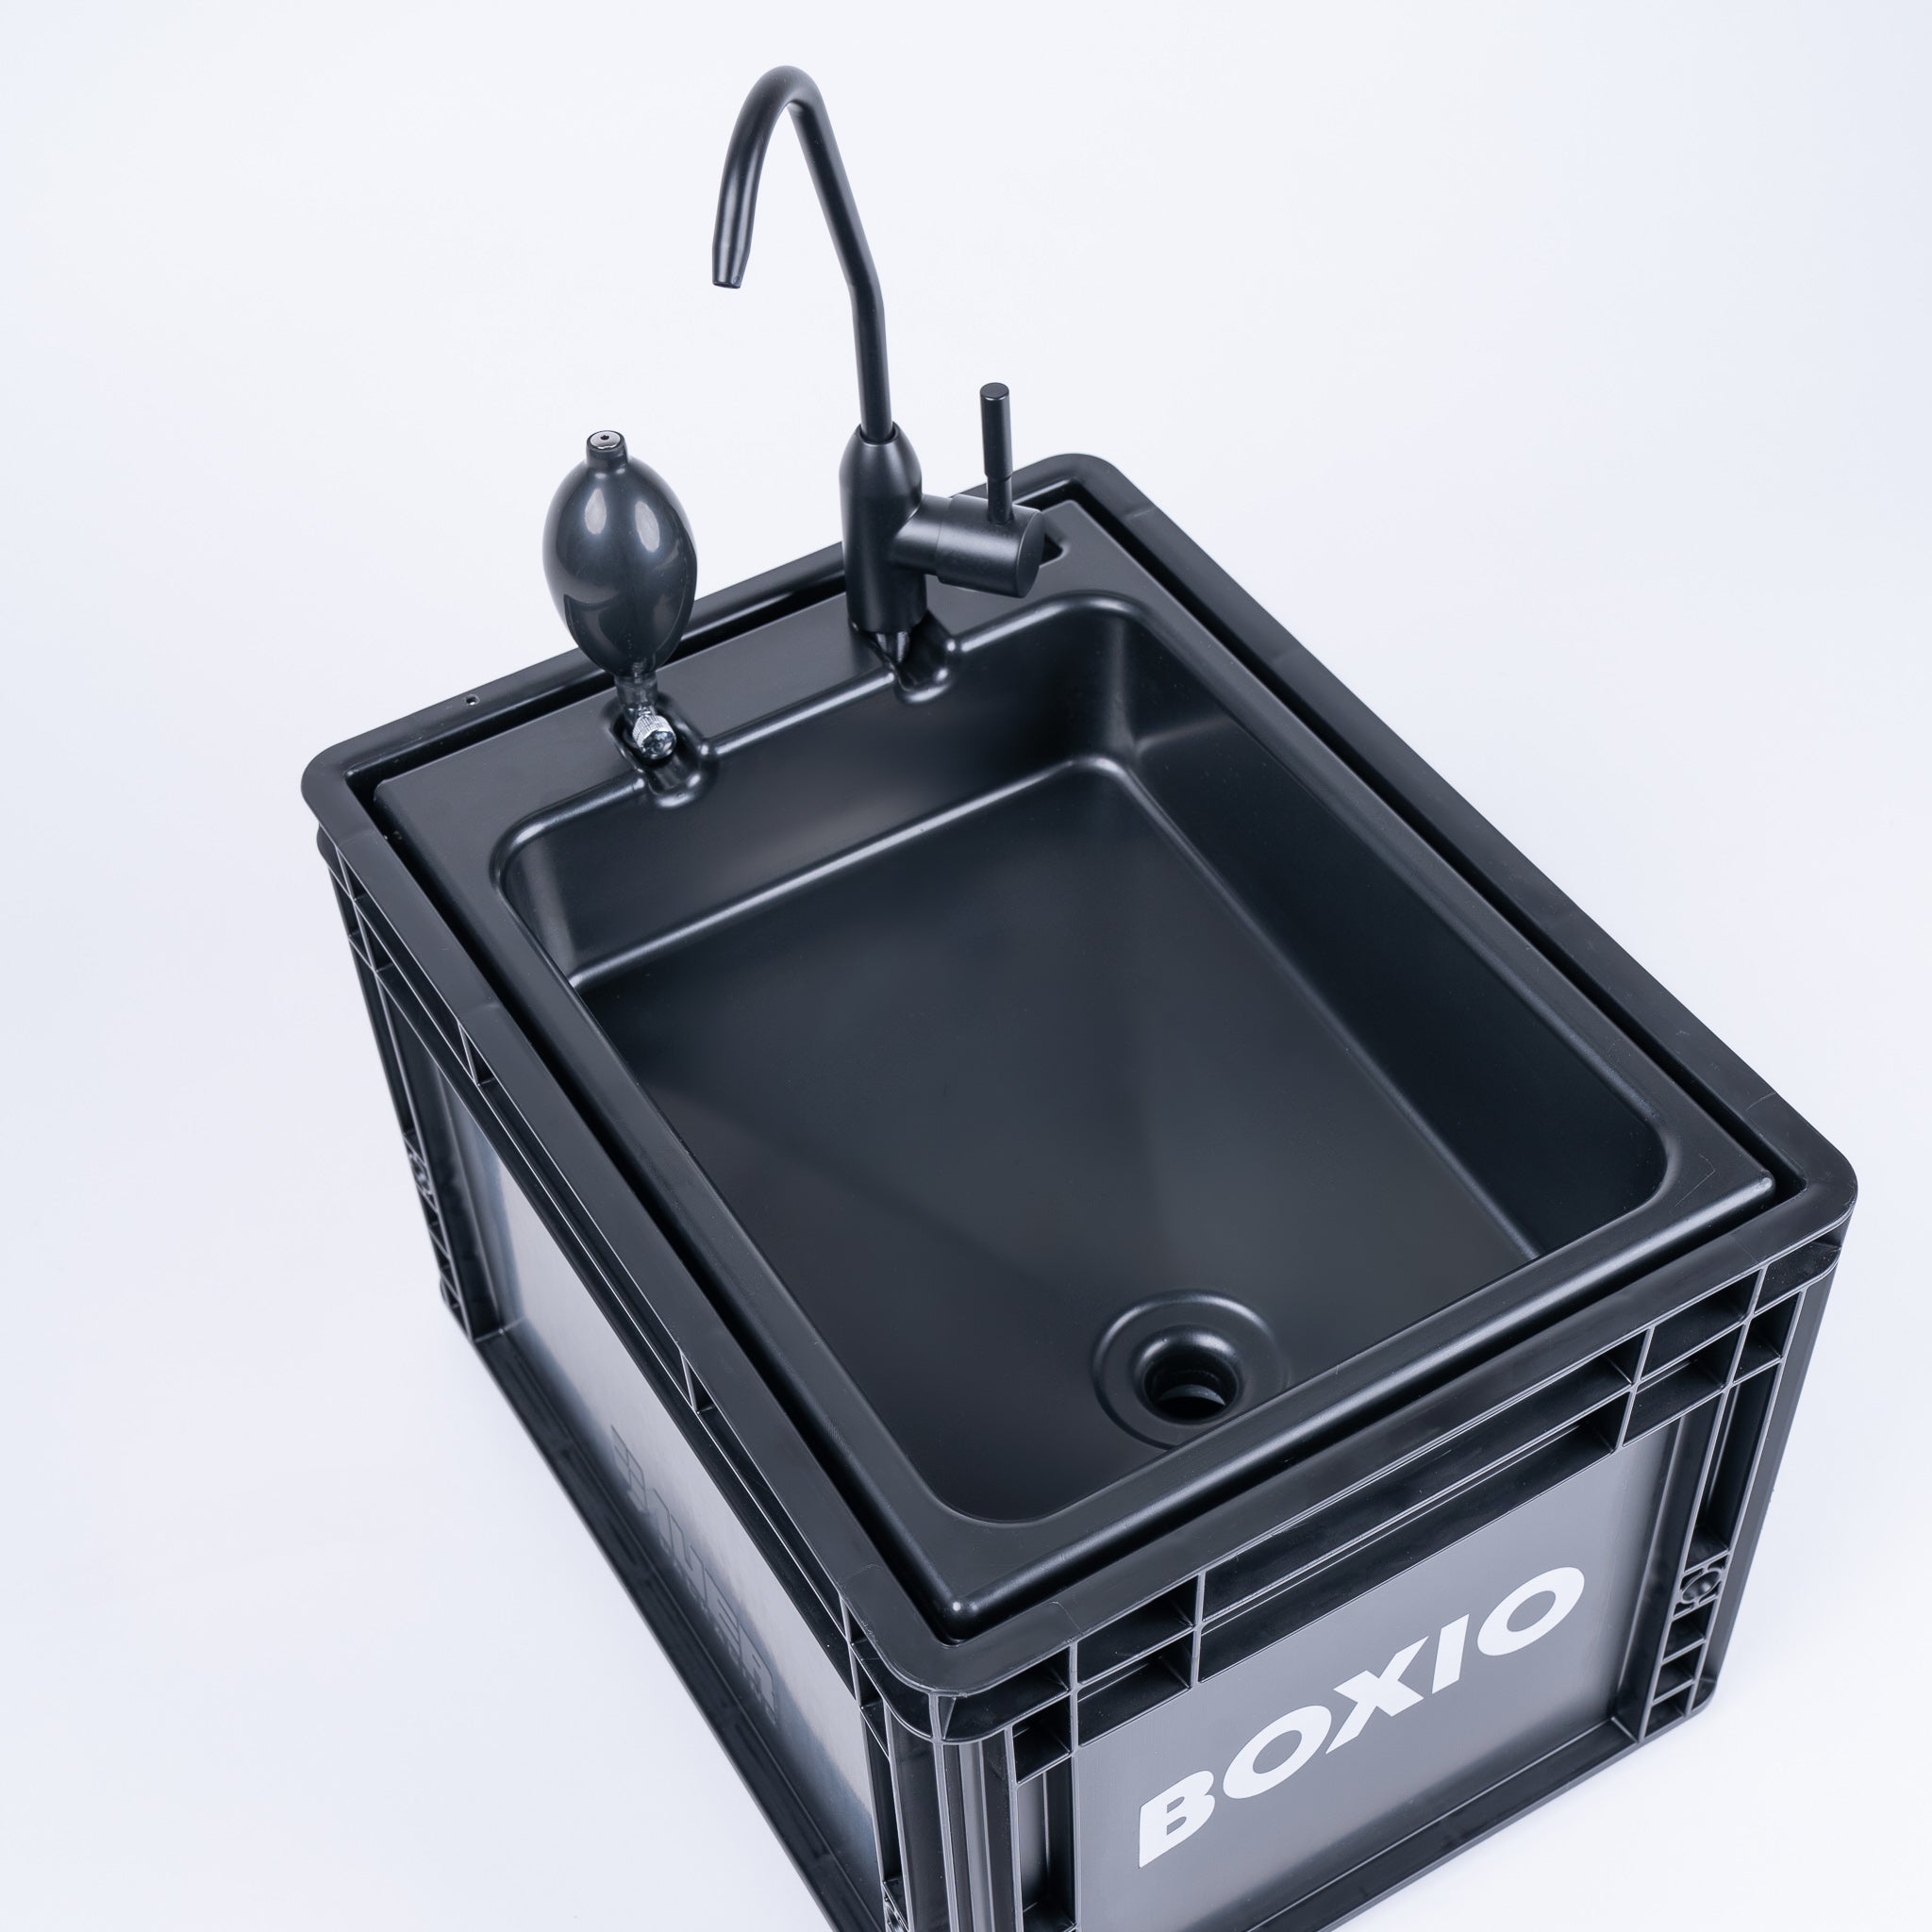 BOXIO - WASH PLUS - Waschbecken Starter Set